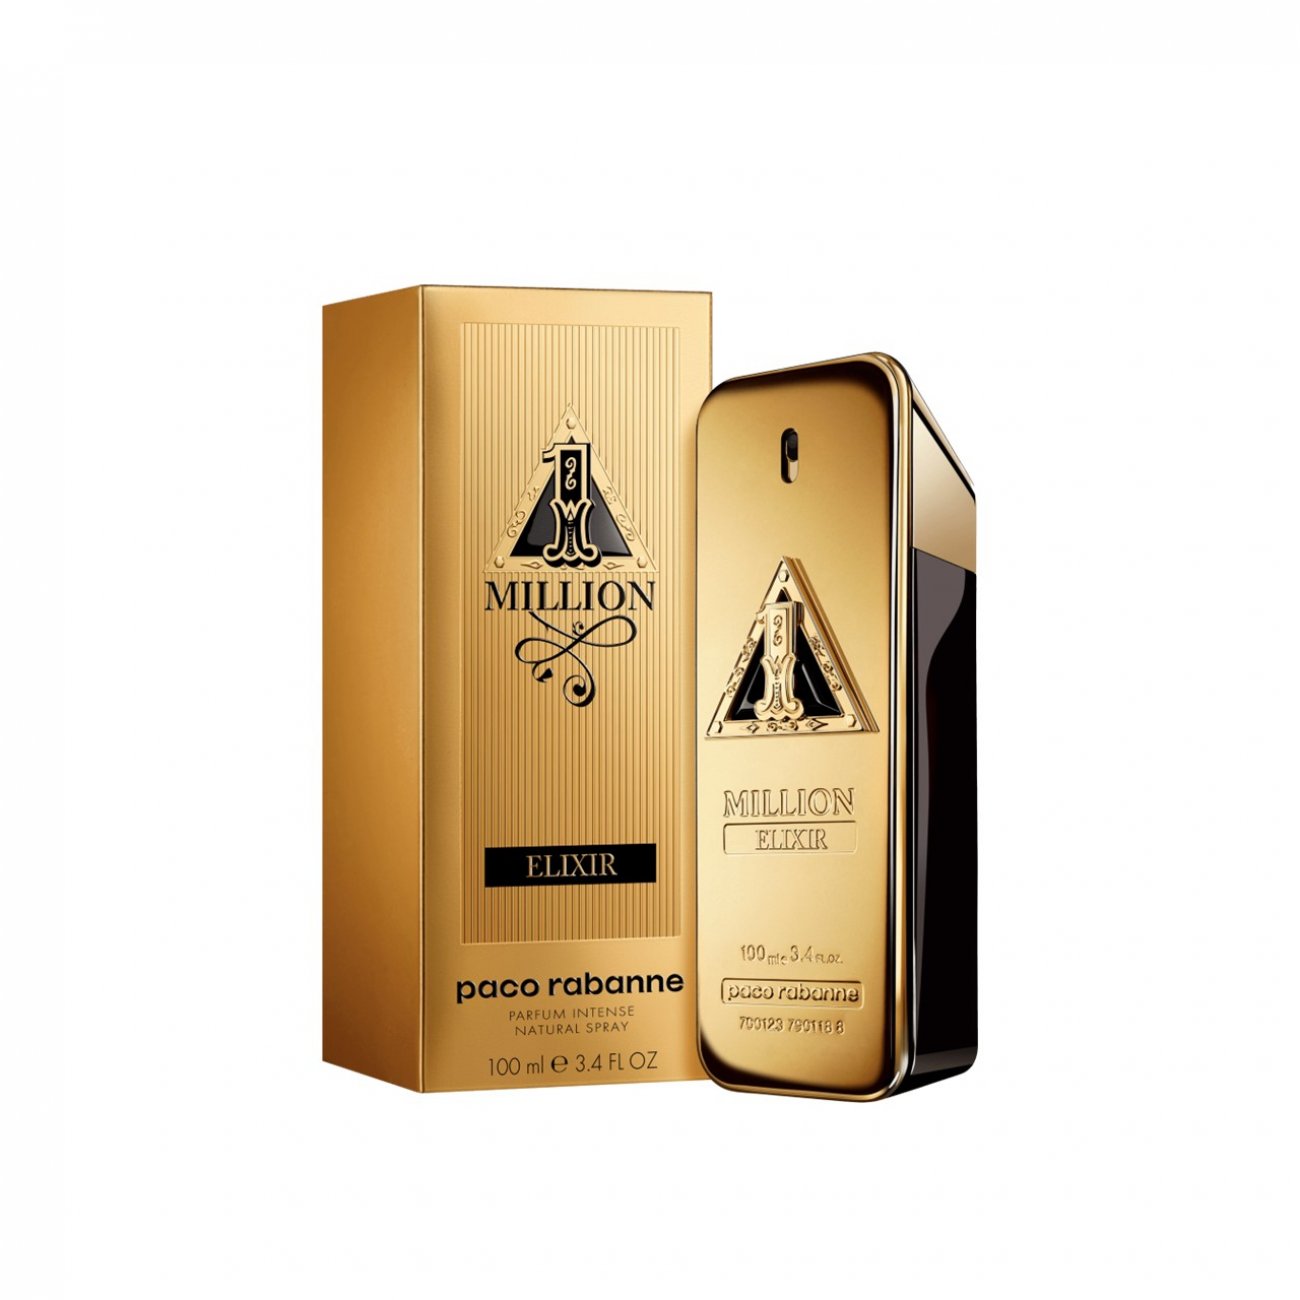 Buy Paco Rabanne Million Elixir Eau de Parfum Intense · India